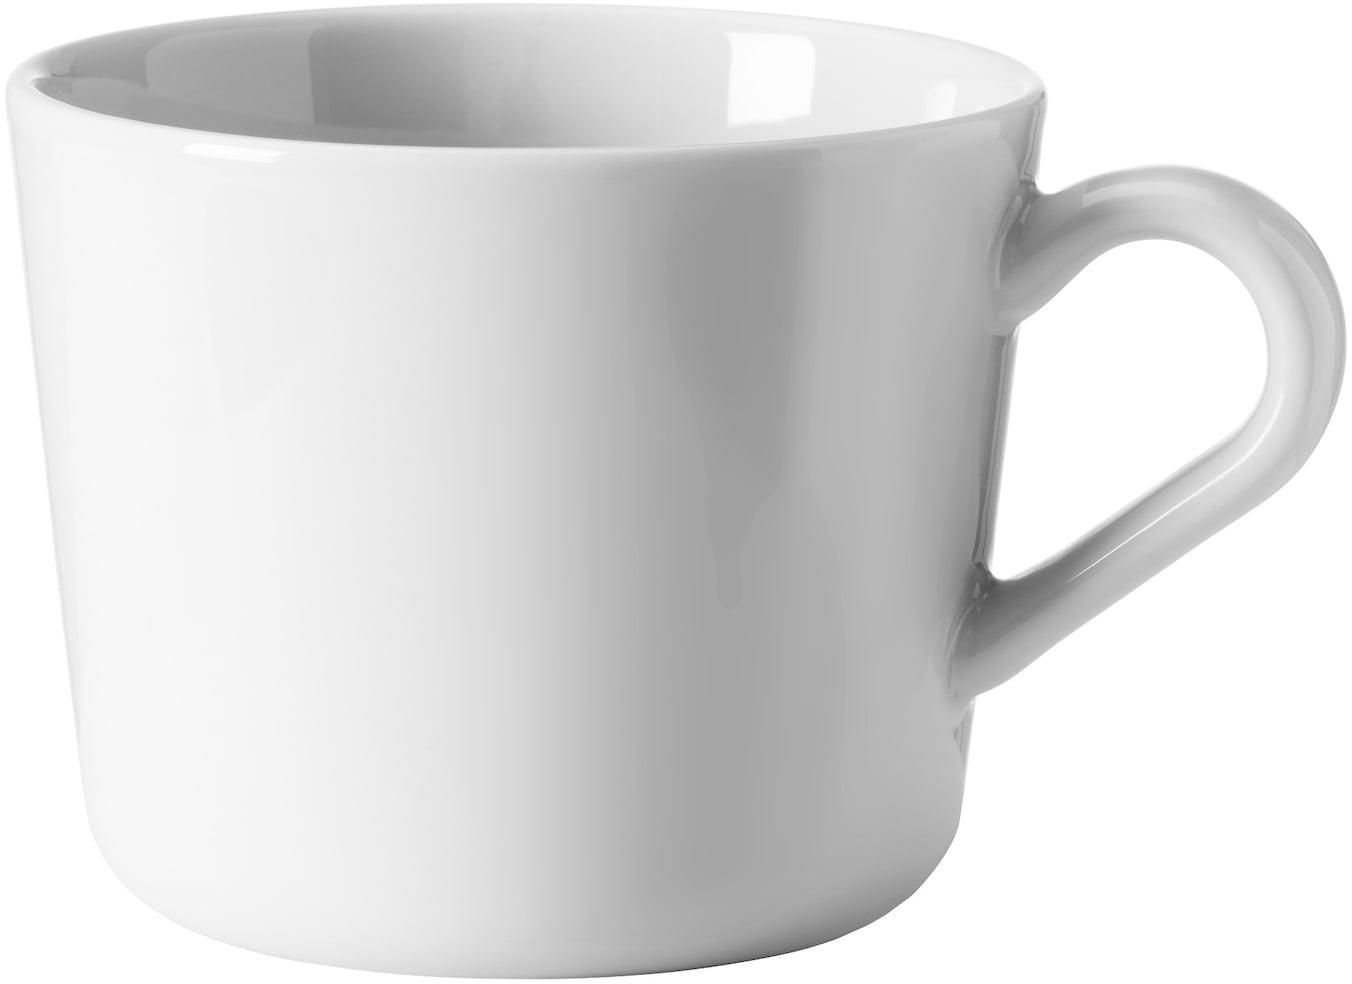 IKEA 365+ Mug - white 24 cl